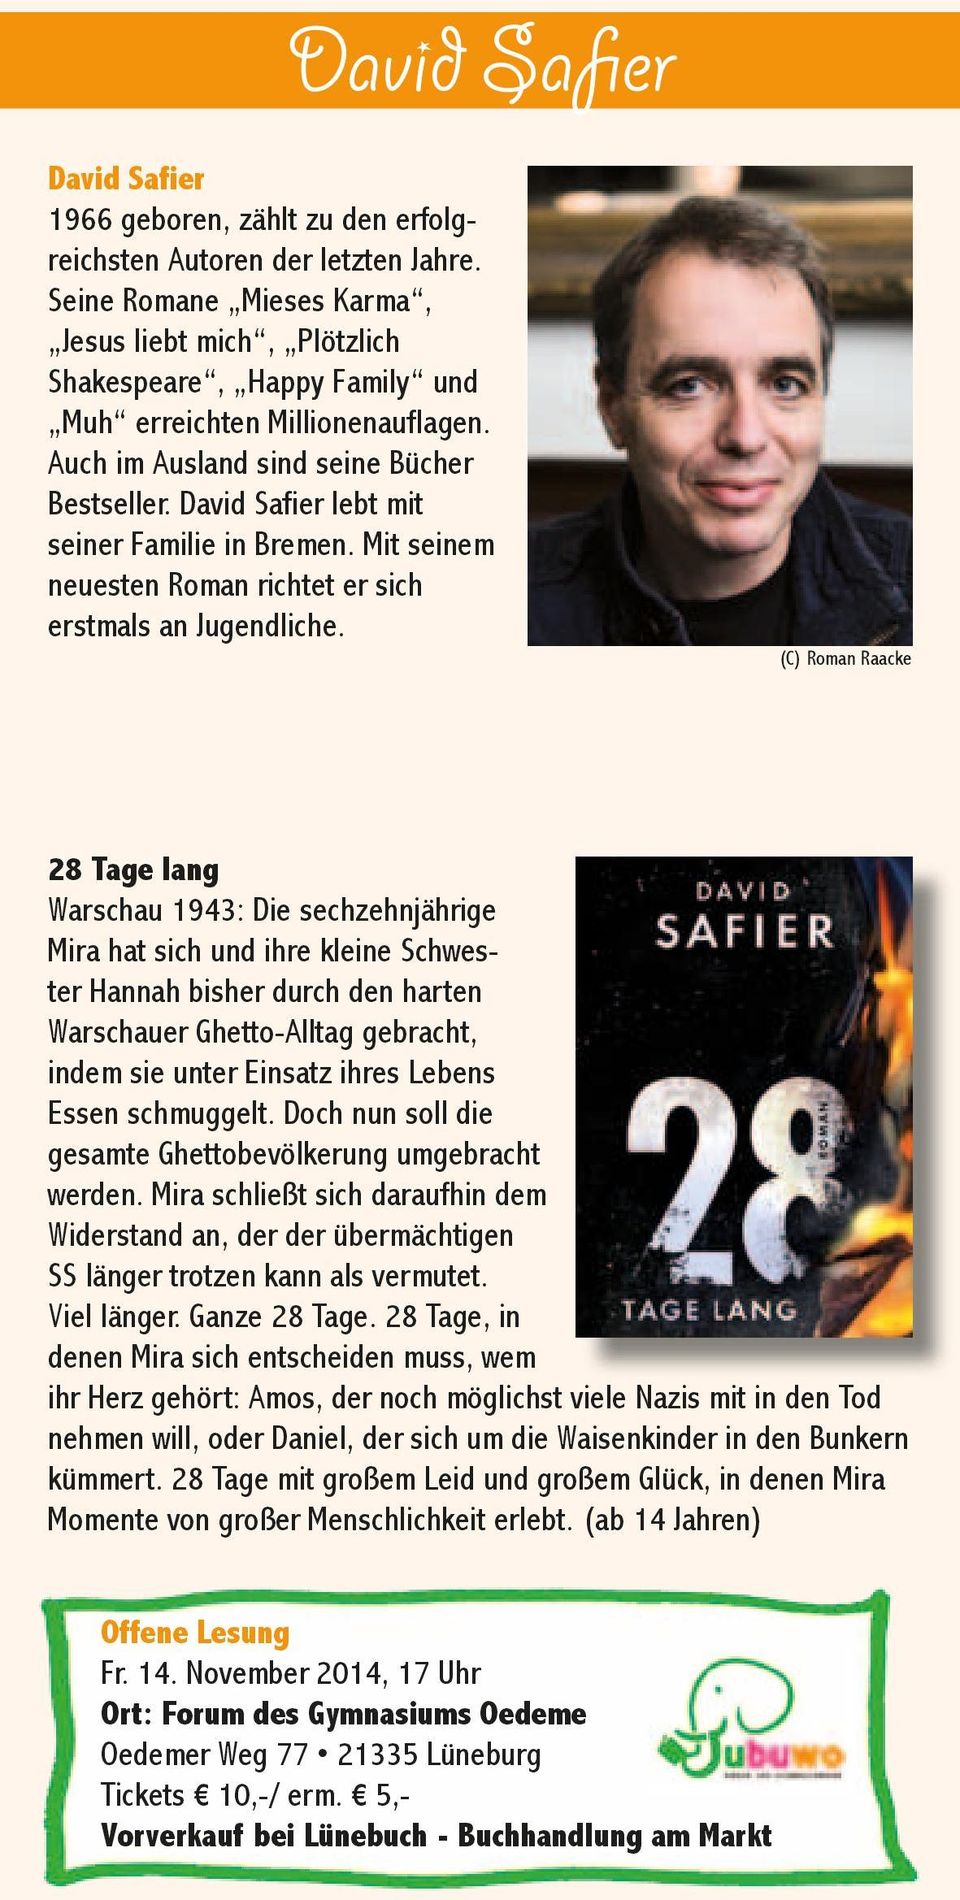 David Safier lebt mit seiner Familie in Bremen. Mit seinem neuesten Roman richtet er sich erstmals an Jugendliche.